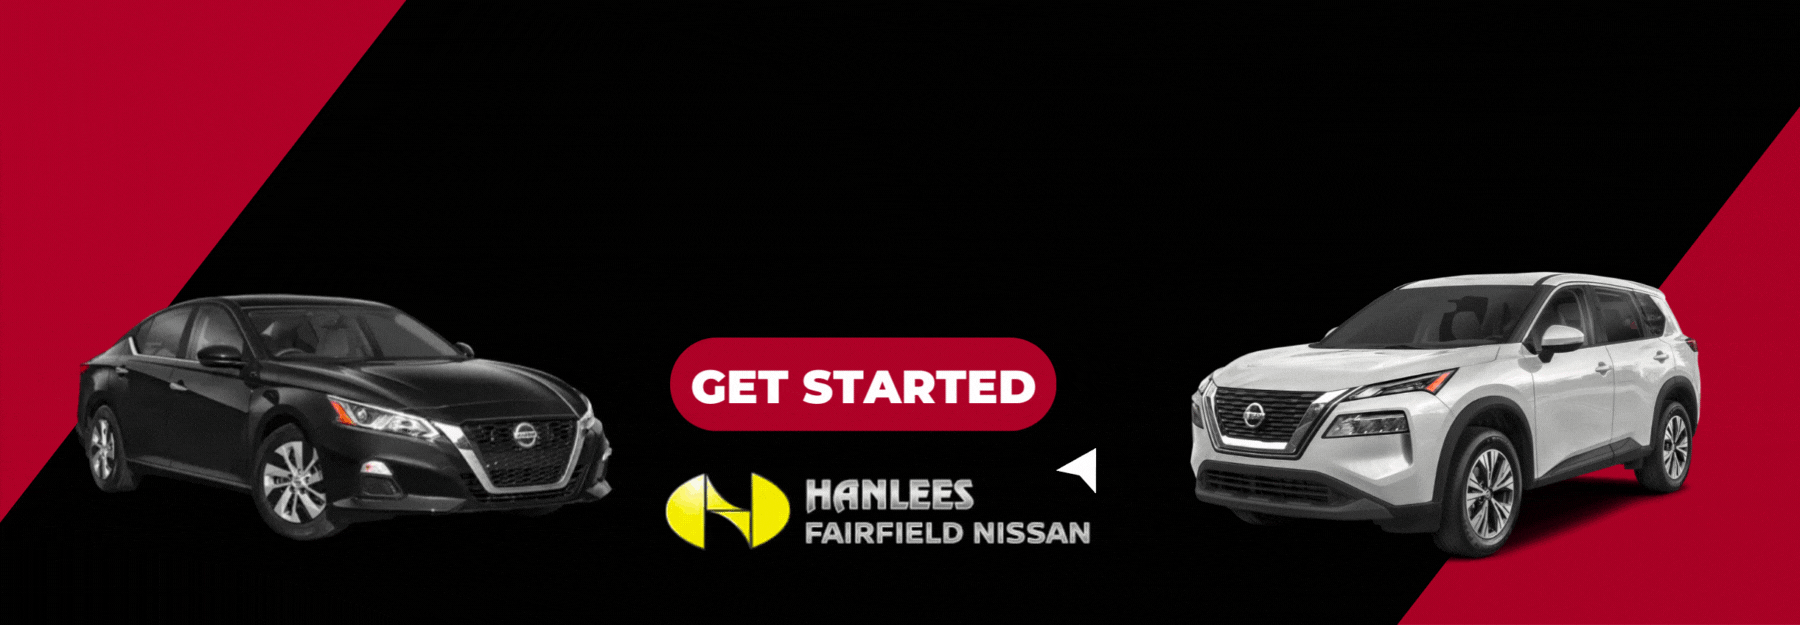 Hanlees Fairfield Nissan Banner IPO